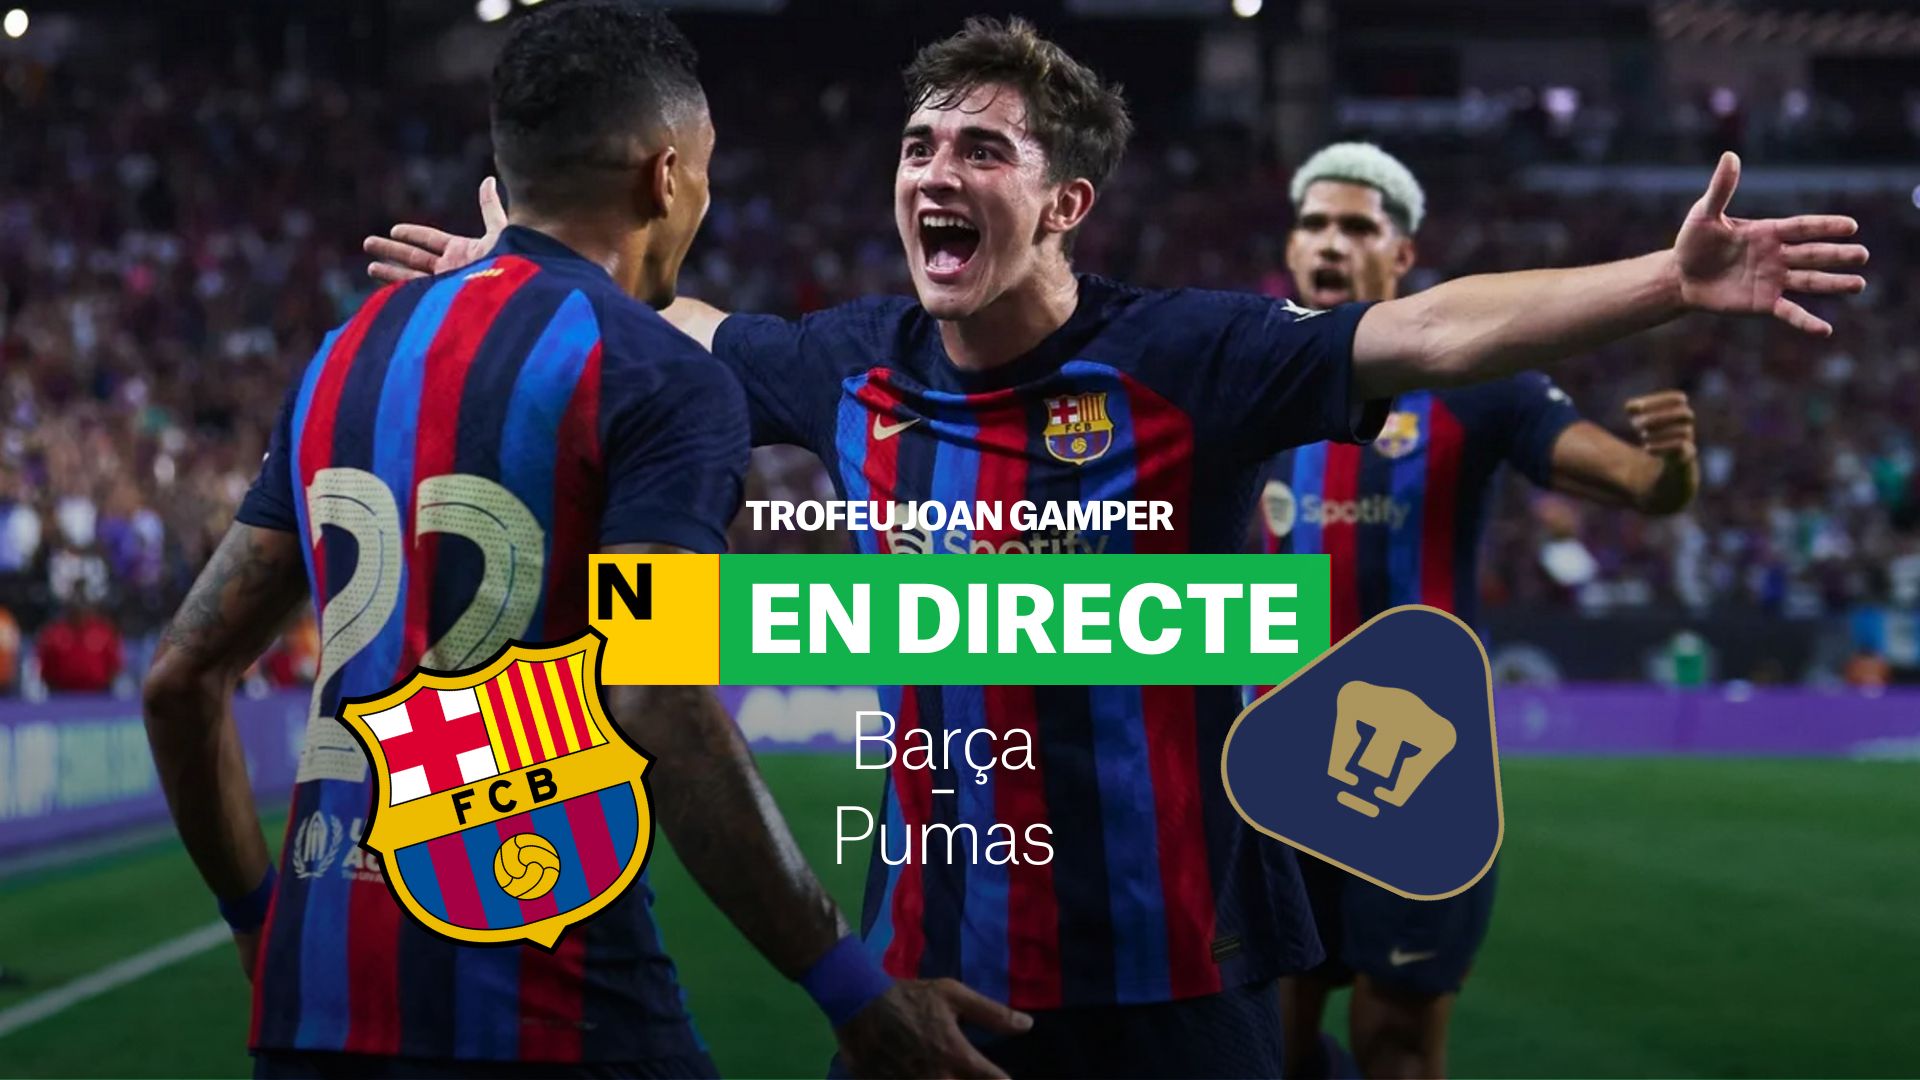 FC Barcelona-Pumas; Trofeo Joan Gamper 2022: resultado, resumen y goles